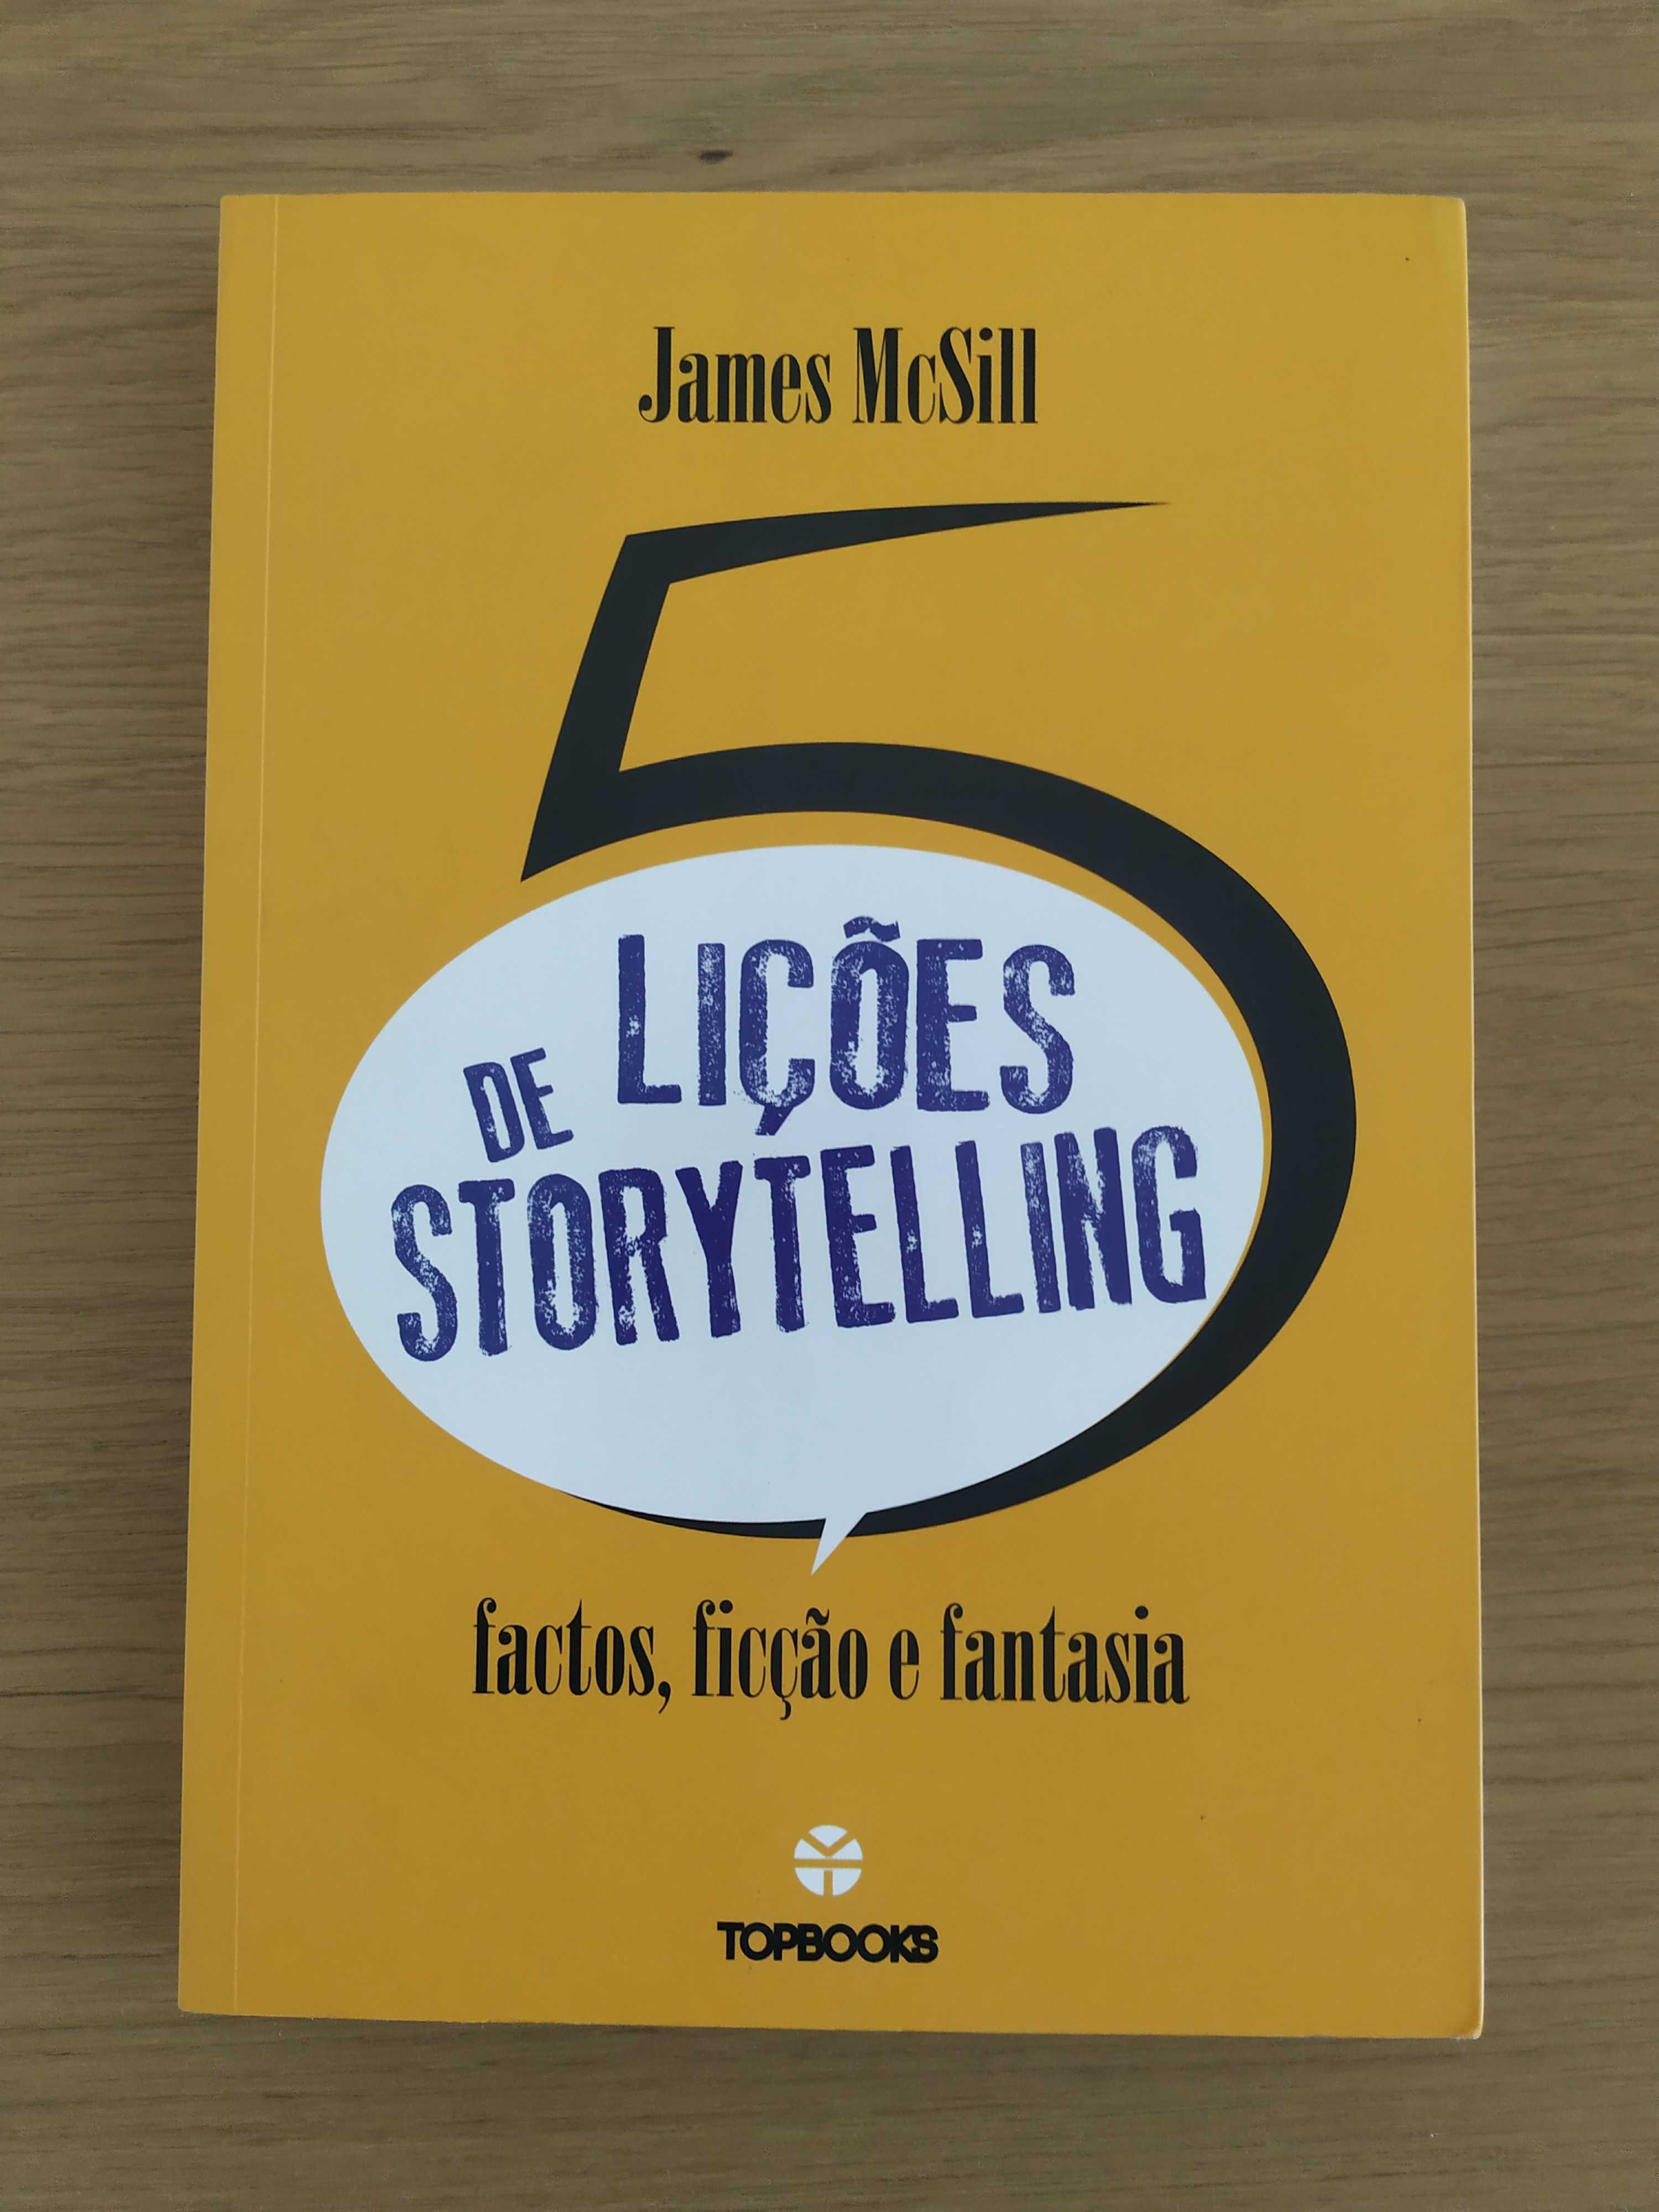 5 Lições de Storytelling - Factos, ficção e fantasia